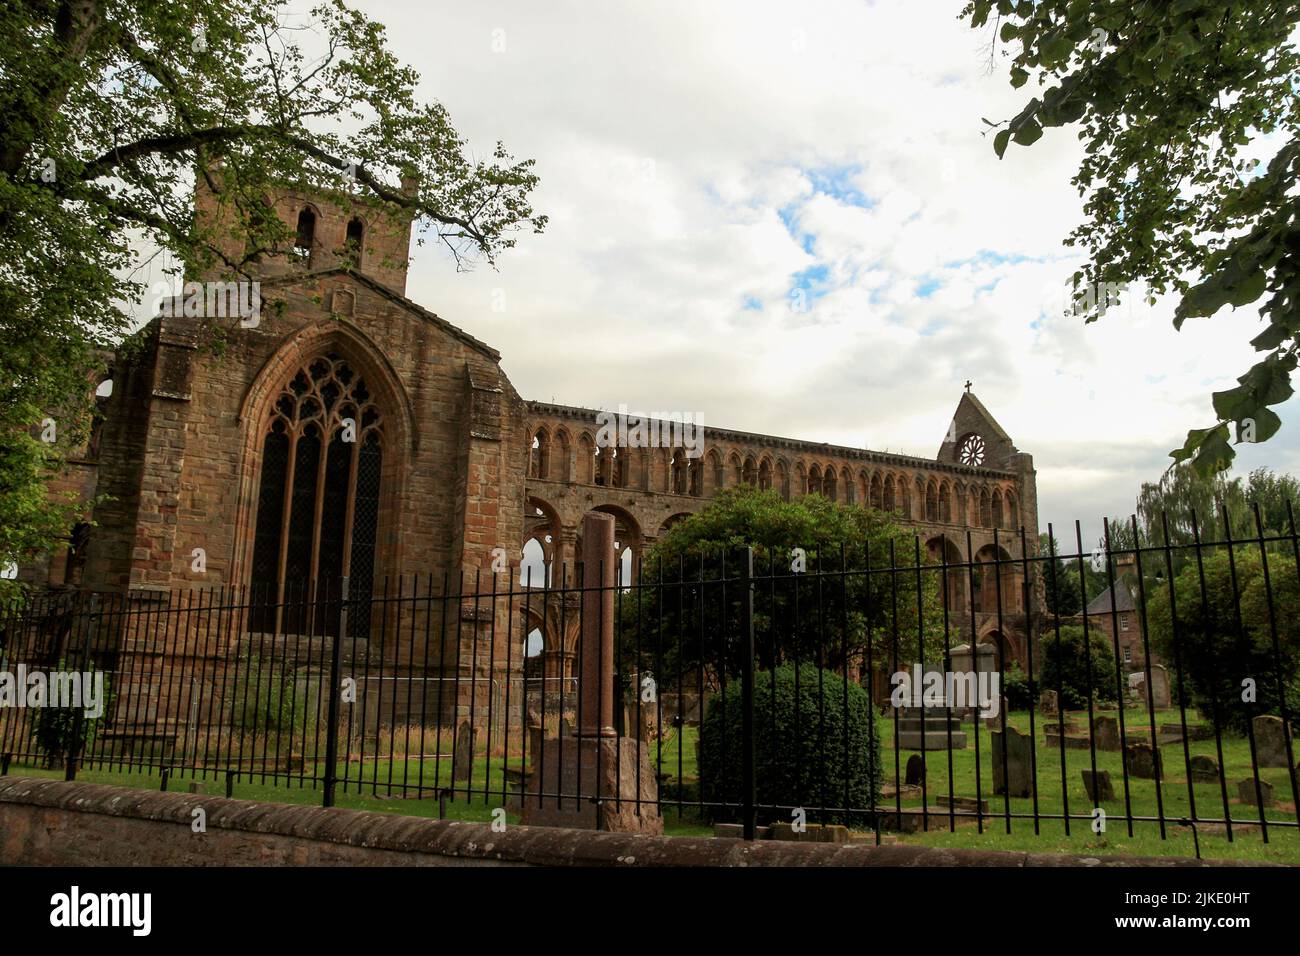 Schottische Ruine, Abteiruine, Ruinen der Jedburgh Abbey, einer Augustiner-Abtei an den schottischen Grenzen, Schottland, Großbritannien Stockfoto